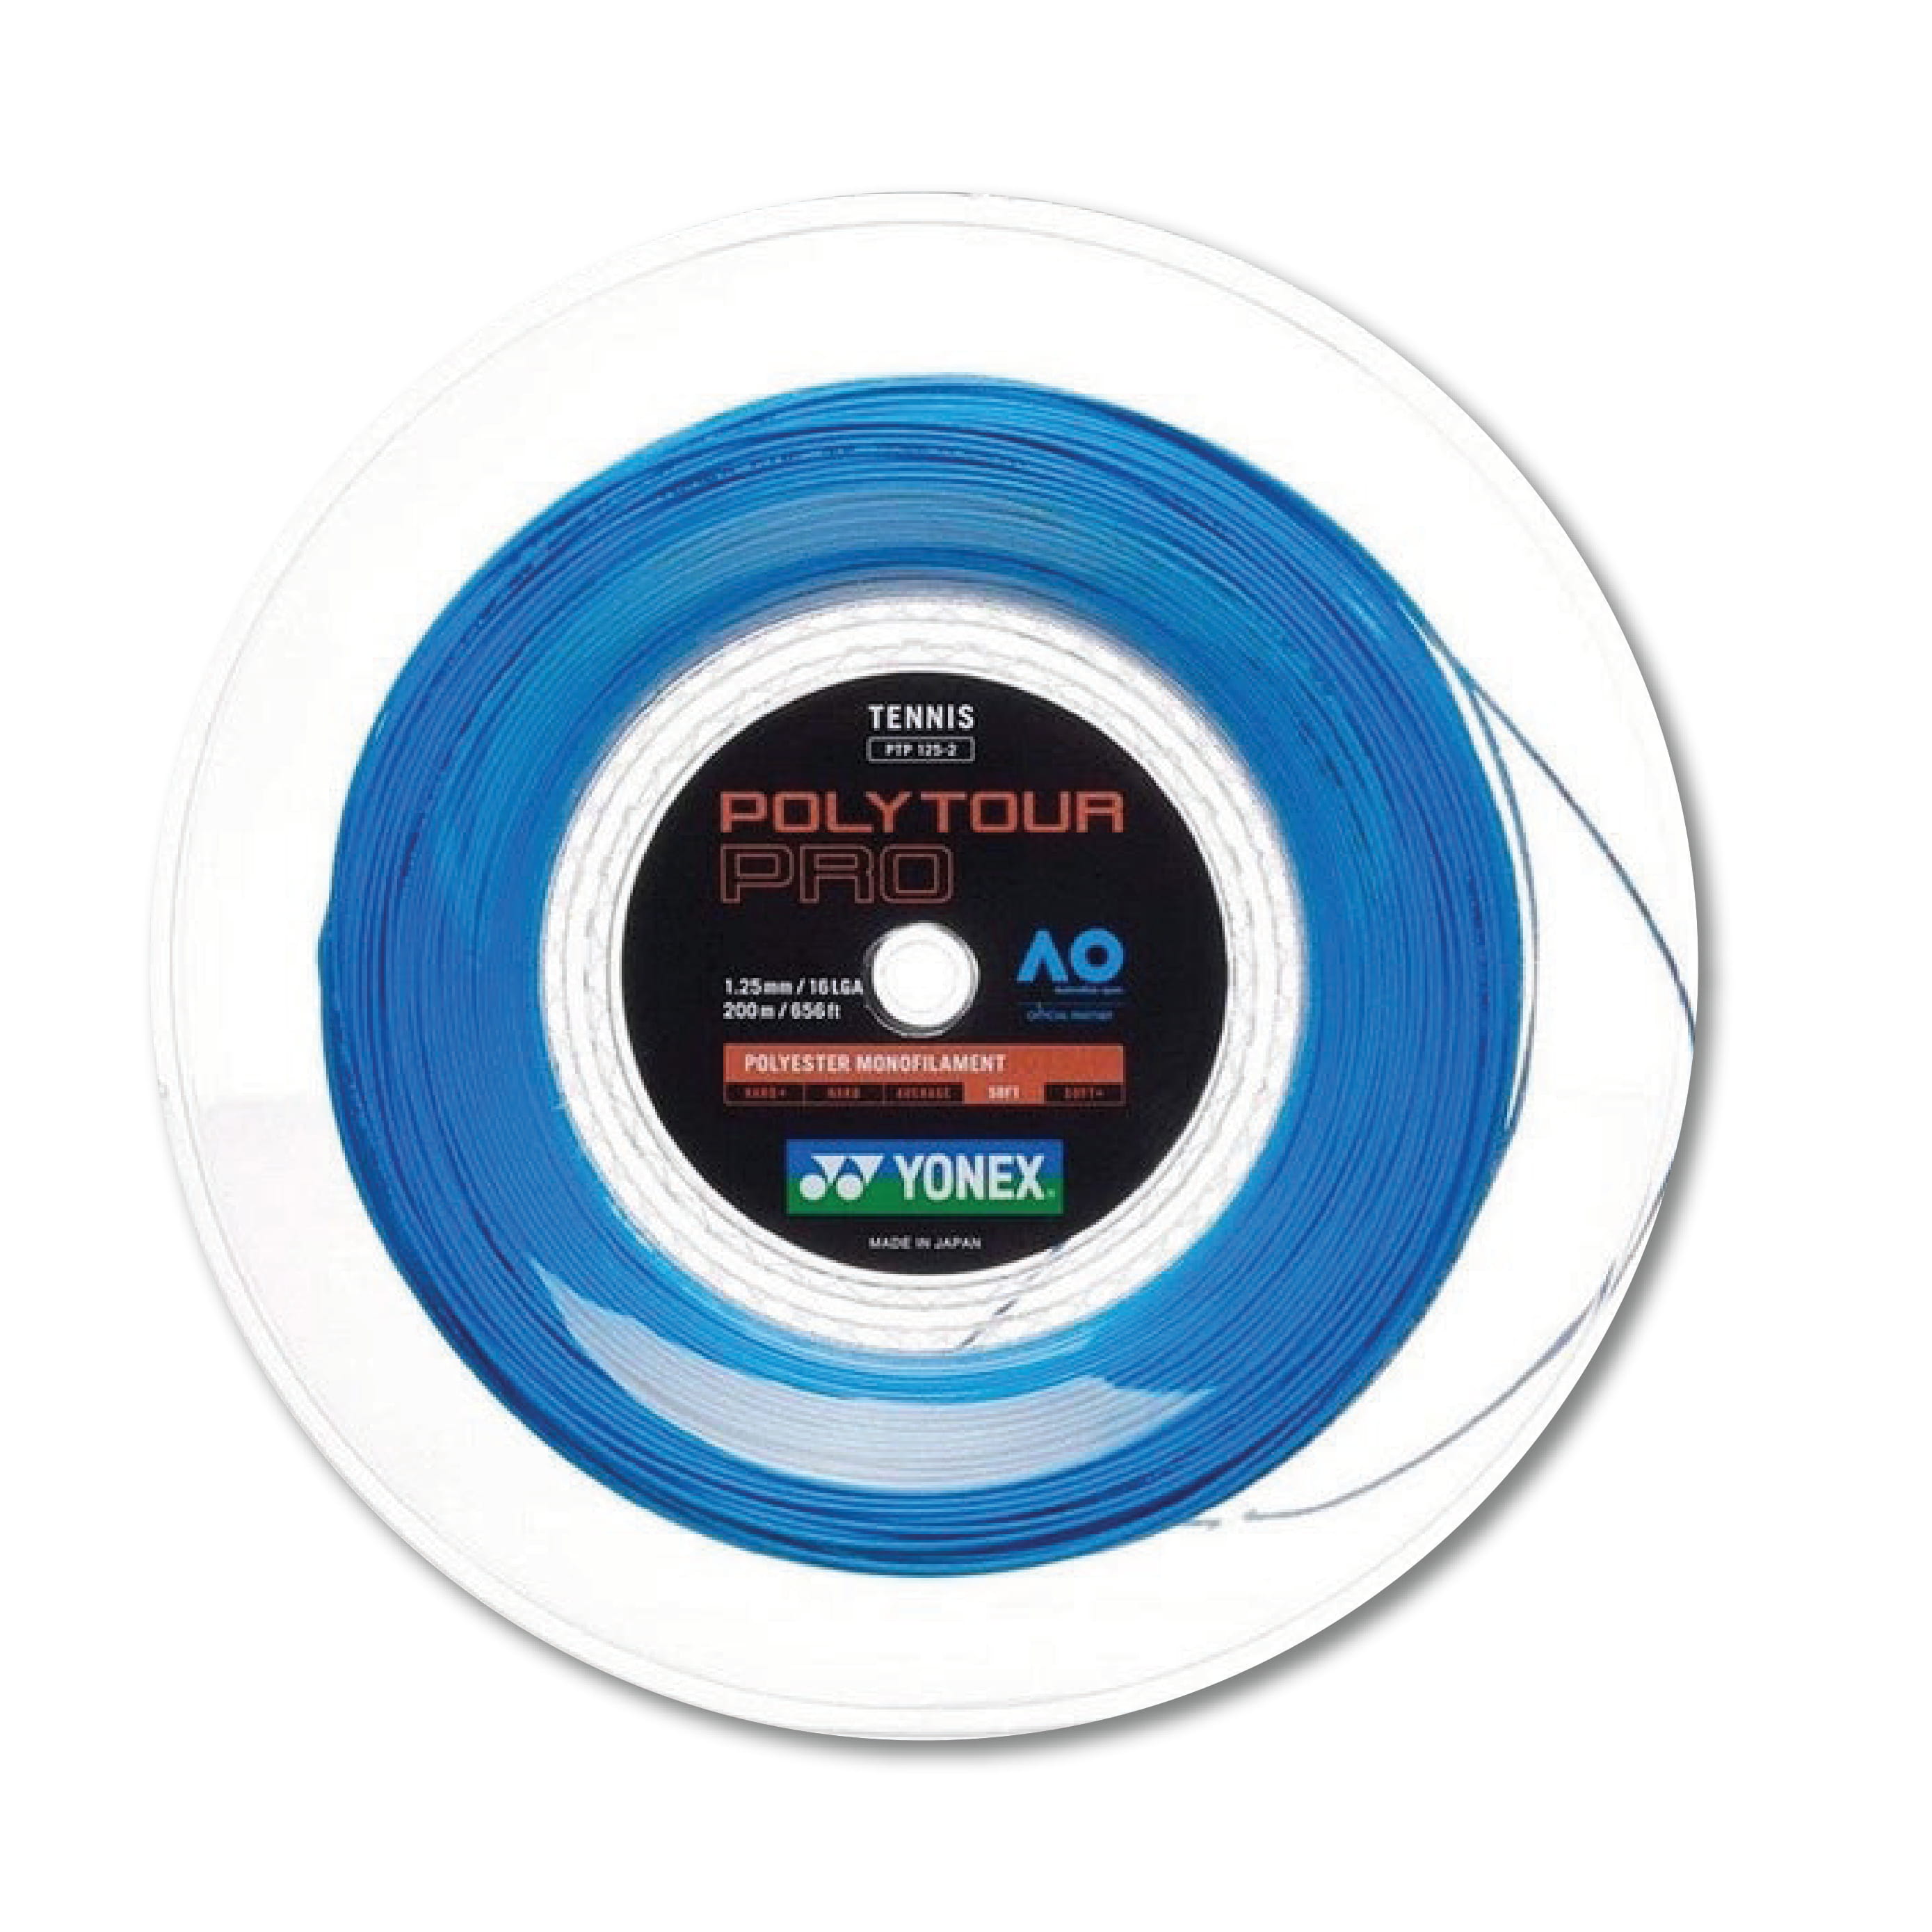 Yonex Polytour Pro 125 / 16L 200m Tennis String Reel (Blue) - Blue